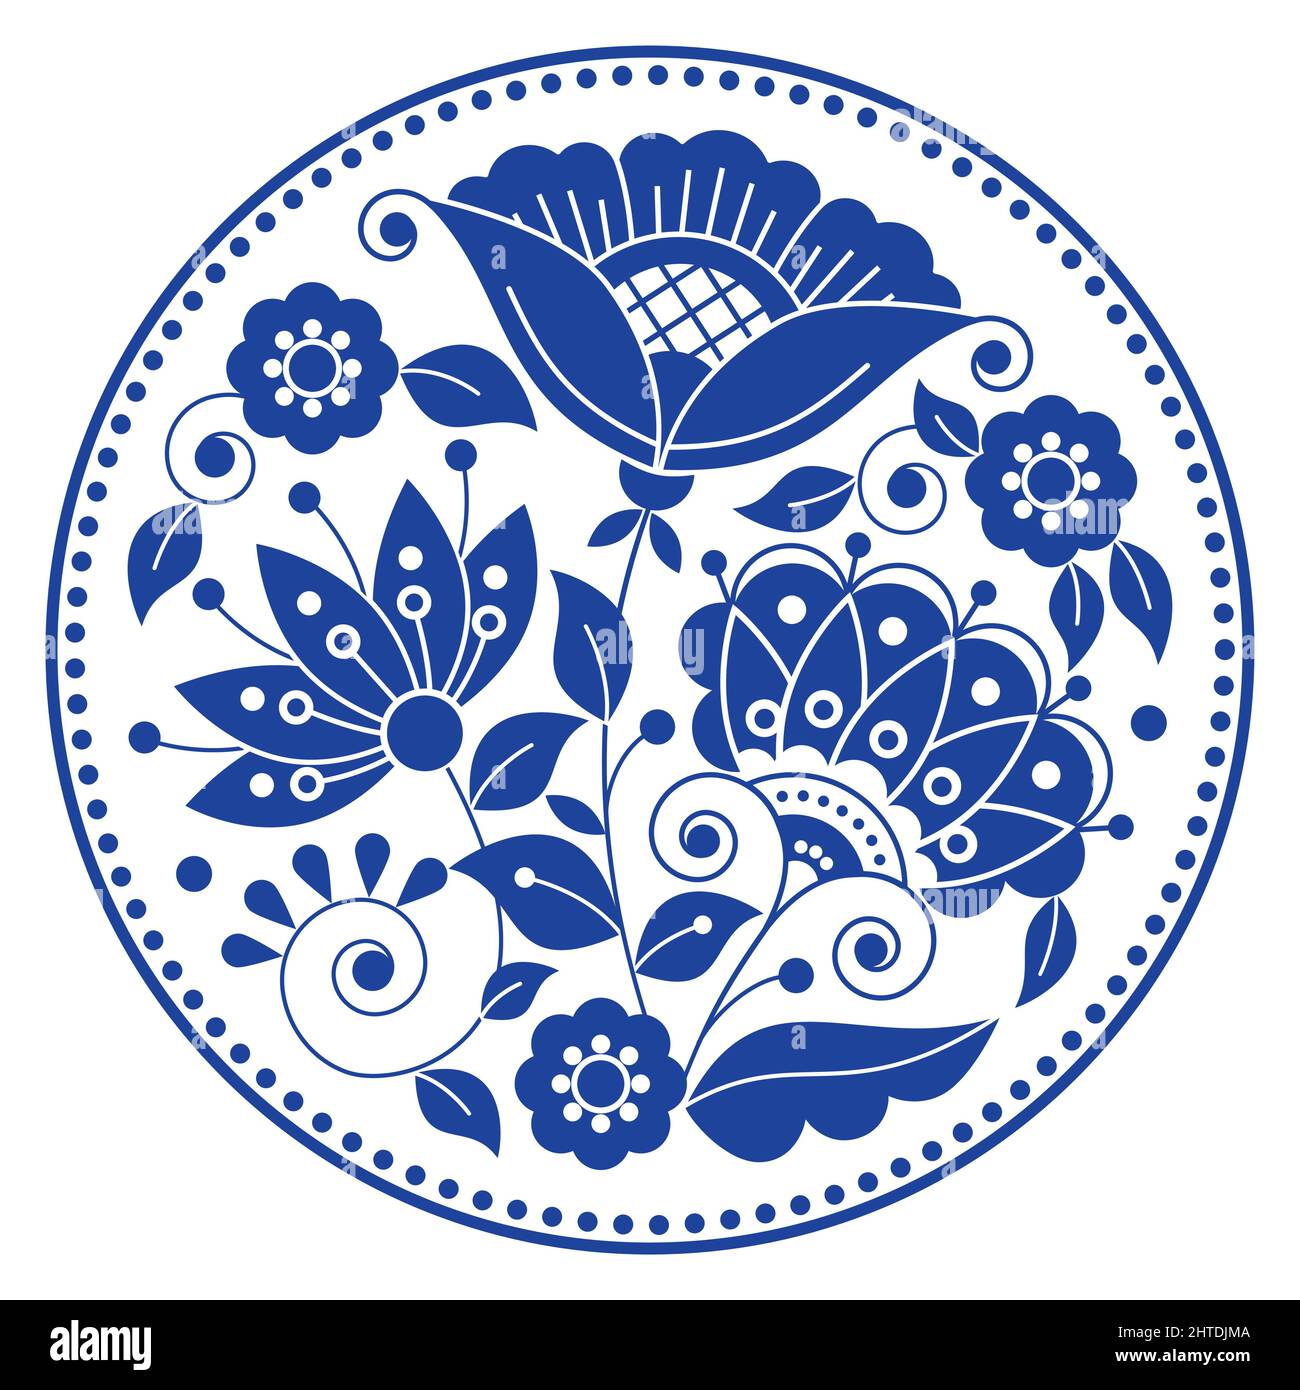 Schwedische Volkskunst Vektor Mandala Design-Muster mit Blumen, Blättern und Wirbeln in Rahmen von der traditionellen Stickerei aus Skandinavien in Nav inspiriert Stock Vektor